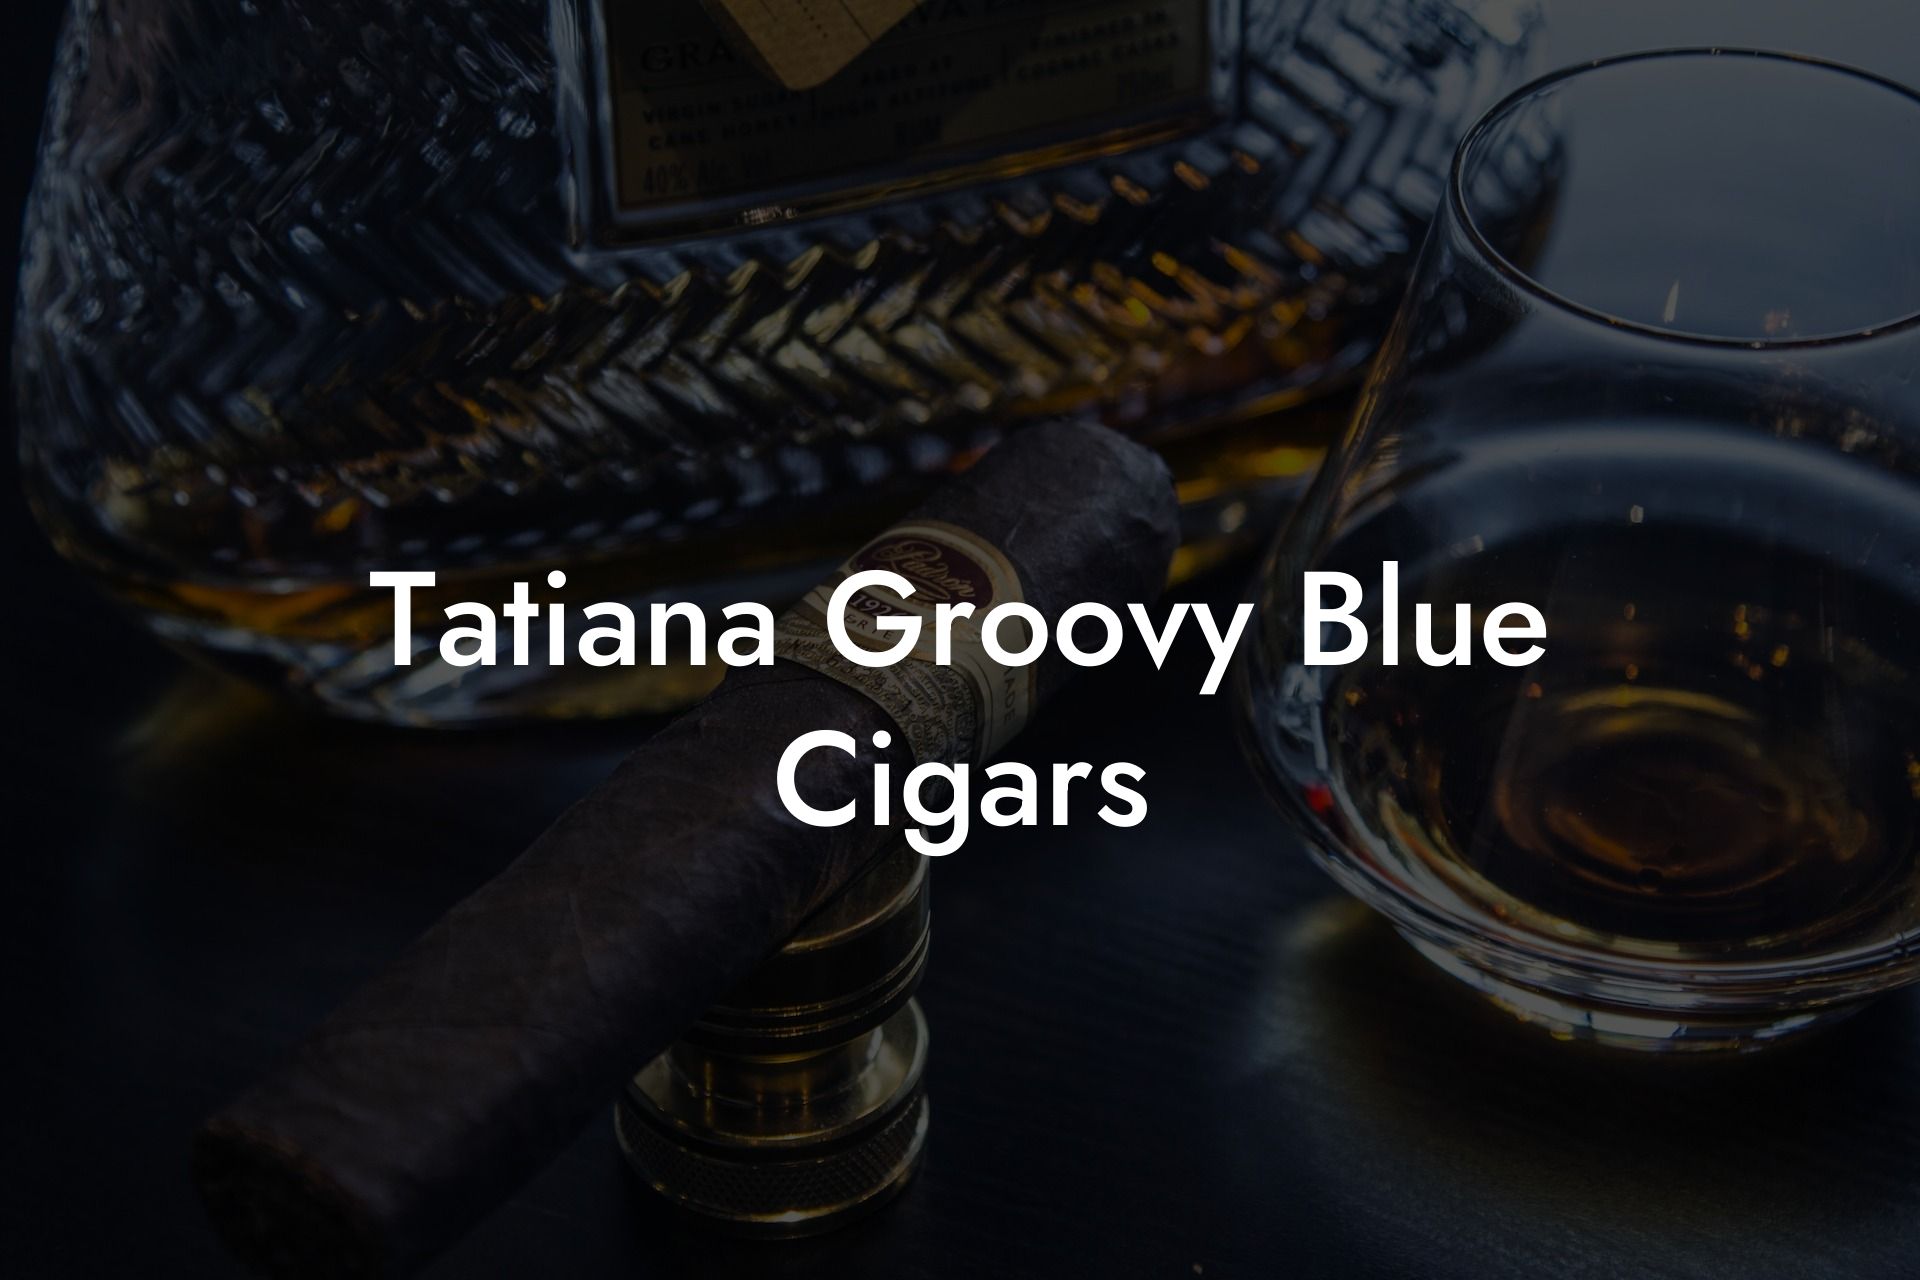 Tatiana Groovy Blue Cigars